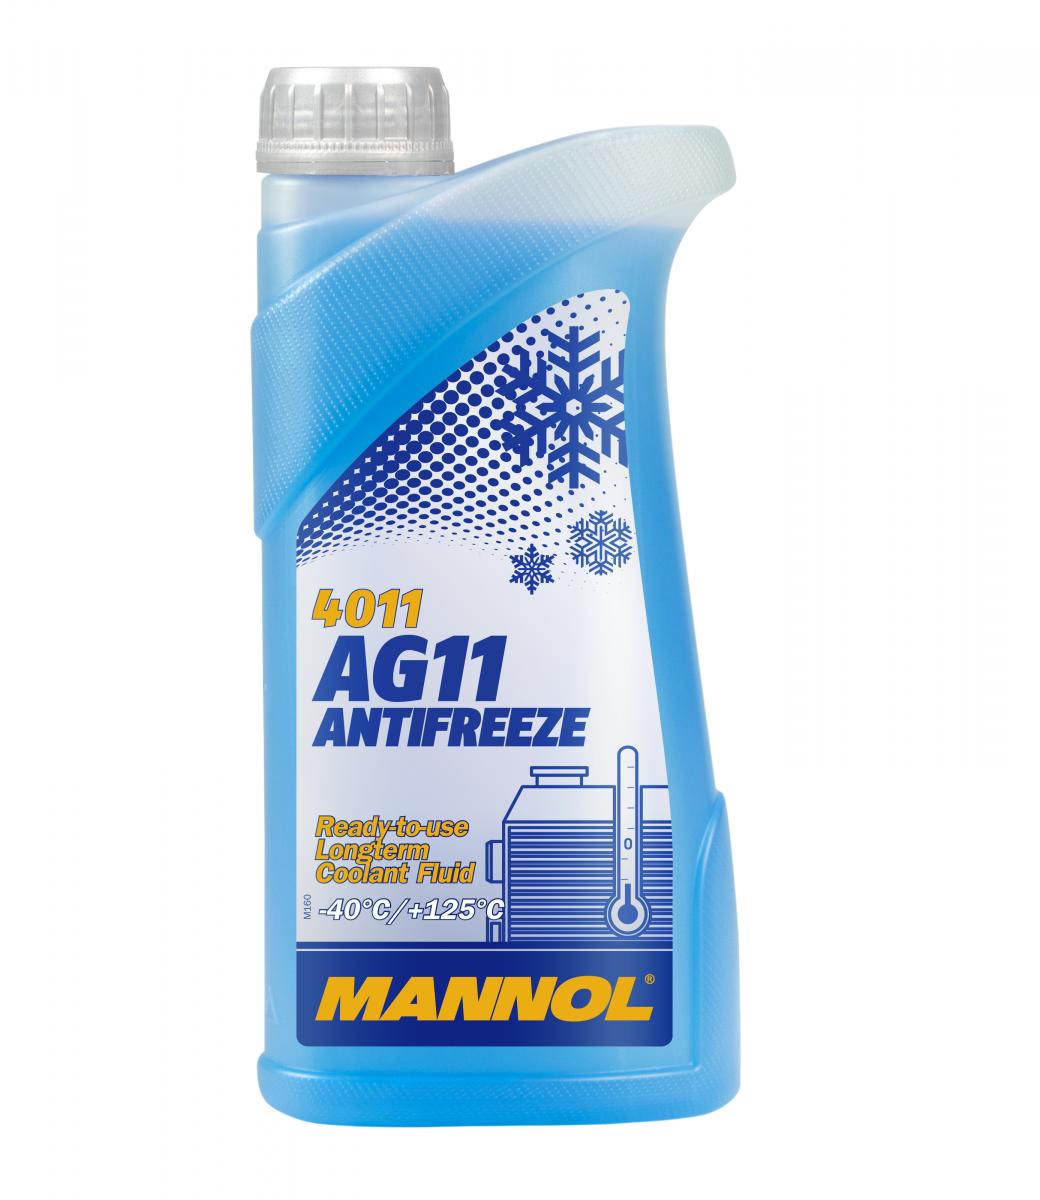 1 Liter MANNOL Antifreeze AG11 Fertiggemisch blau -40°C G11 Kühlerfrostschutz